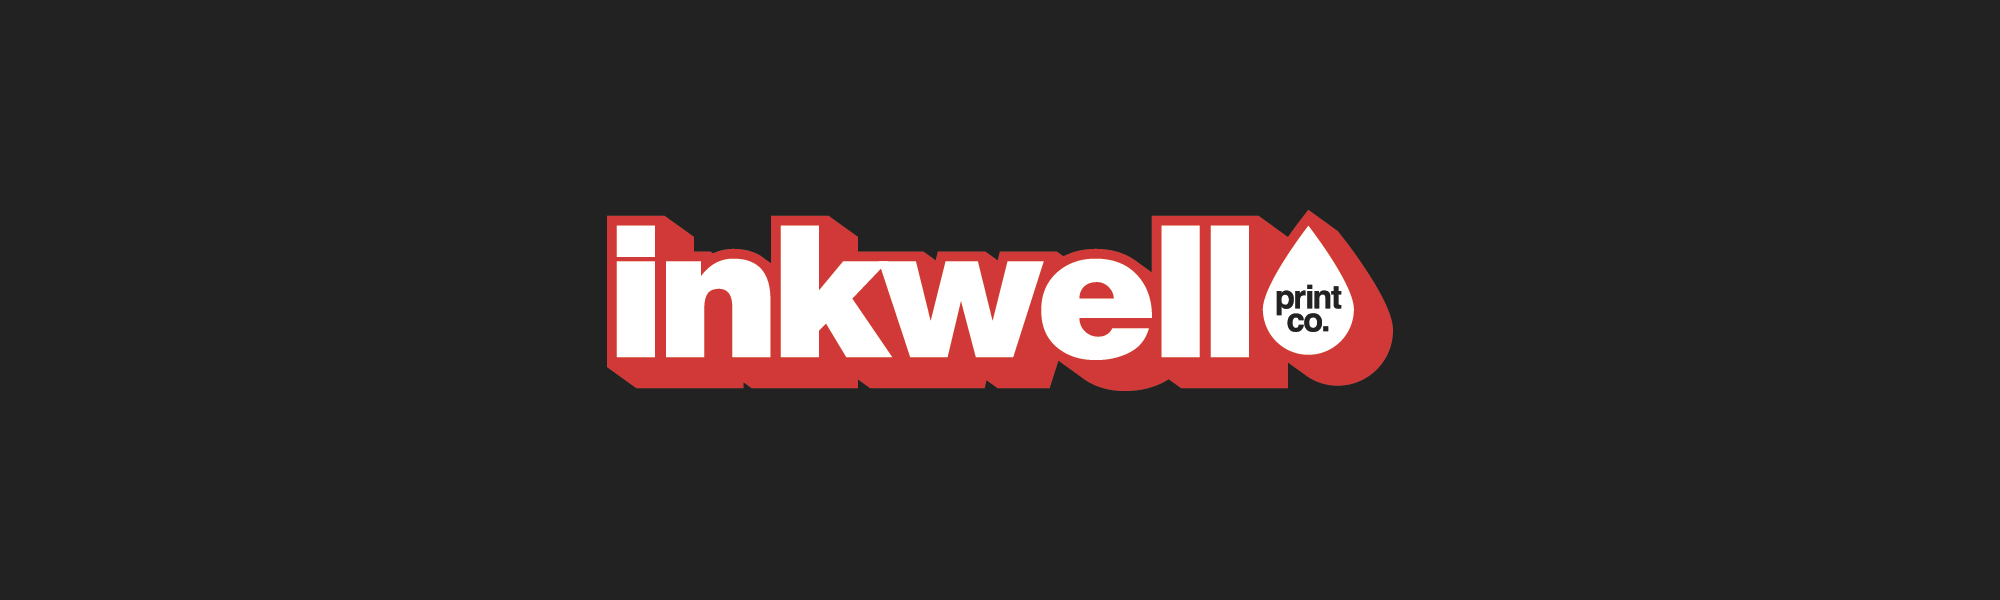 Inkwell Print Co.